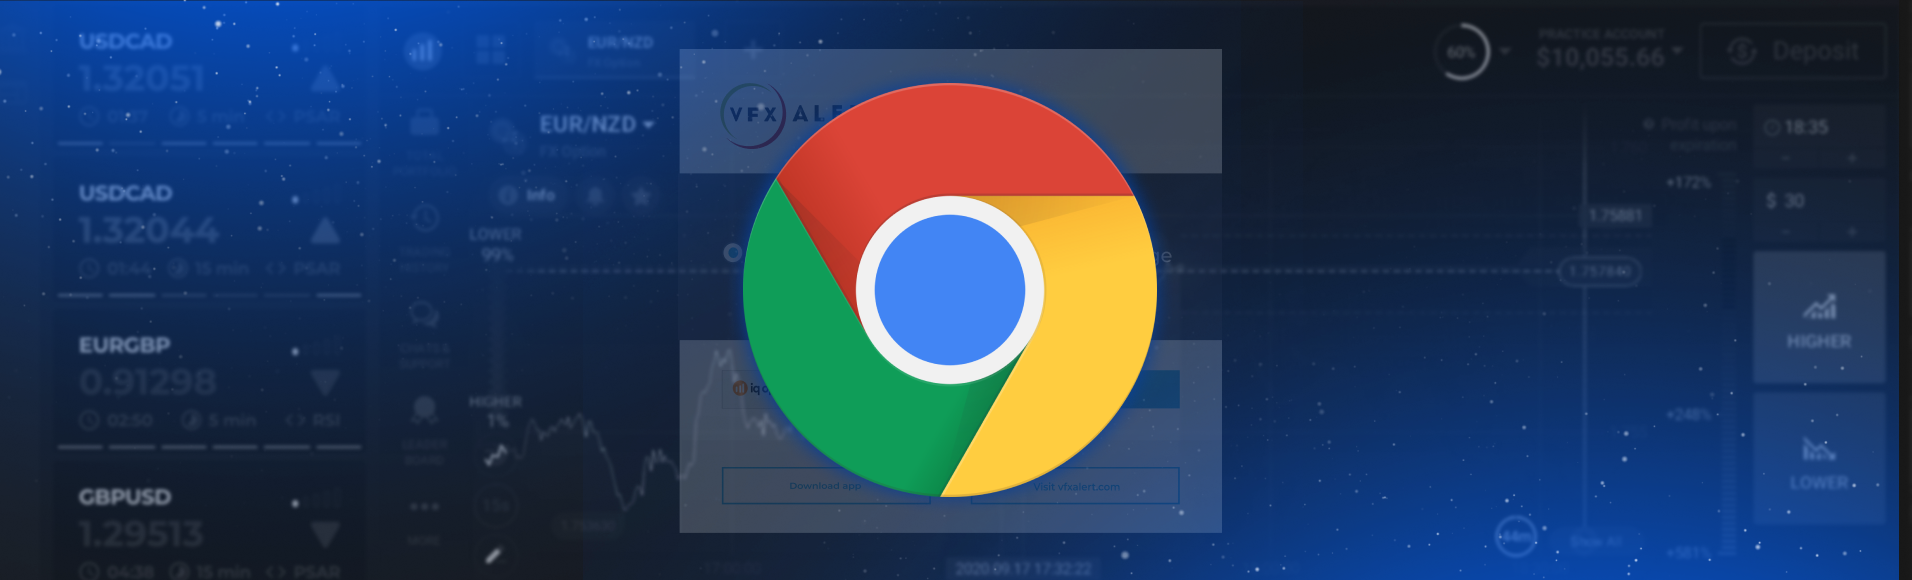 إشارات vfxAlert في متصفح Chrome